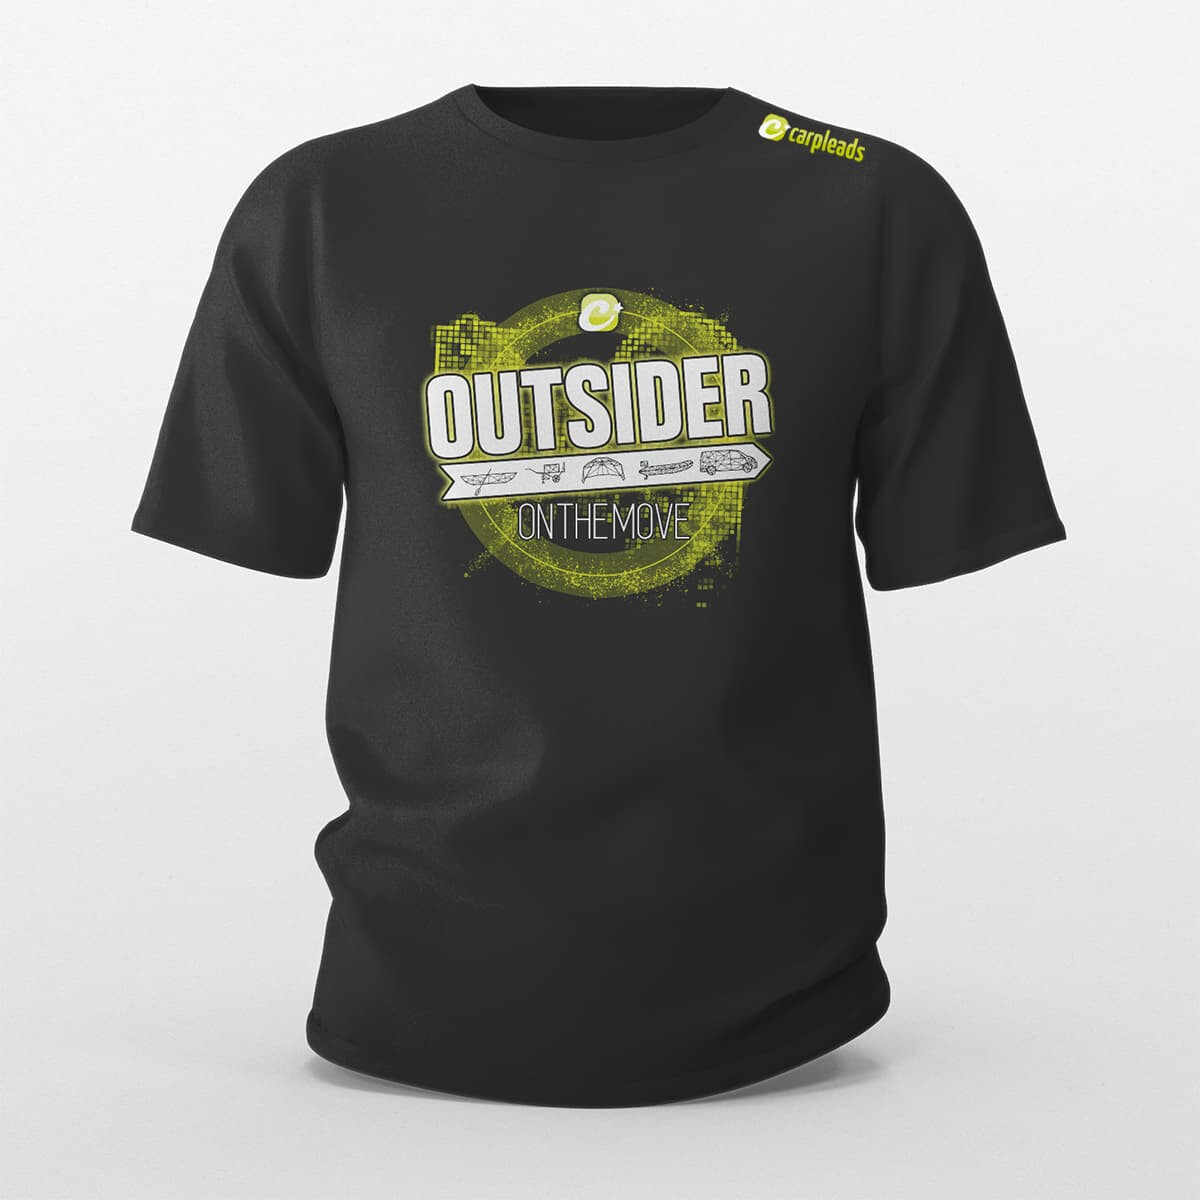 Carpleads "OUTSIDER" T-Shirt 2024 - M